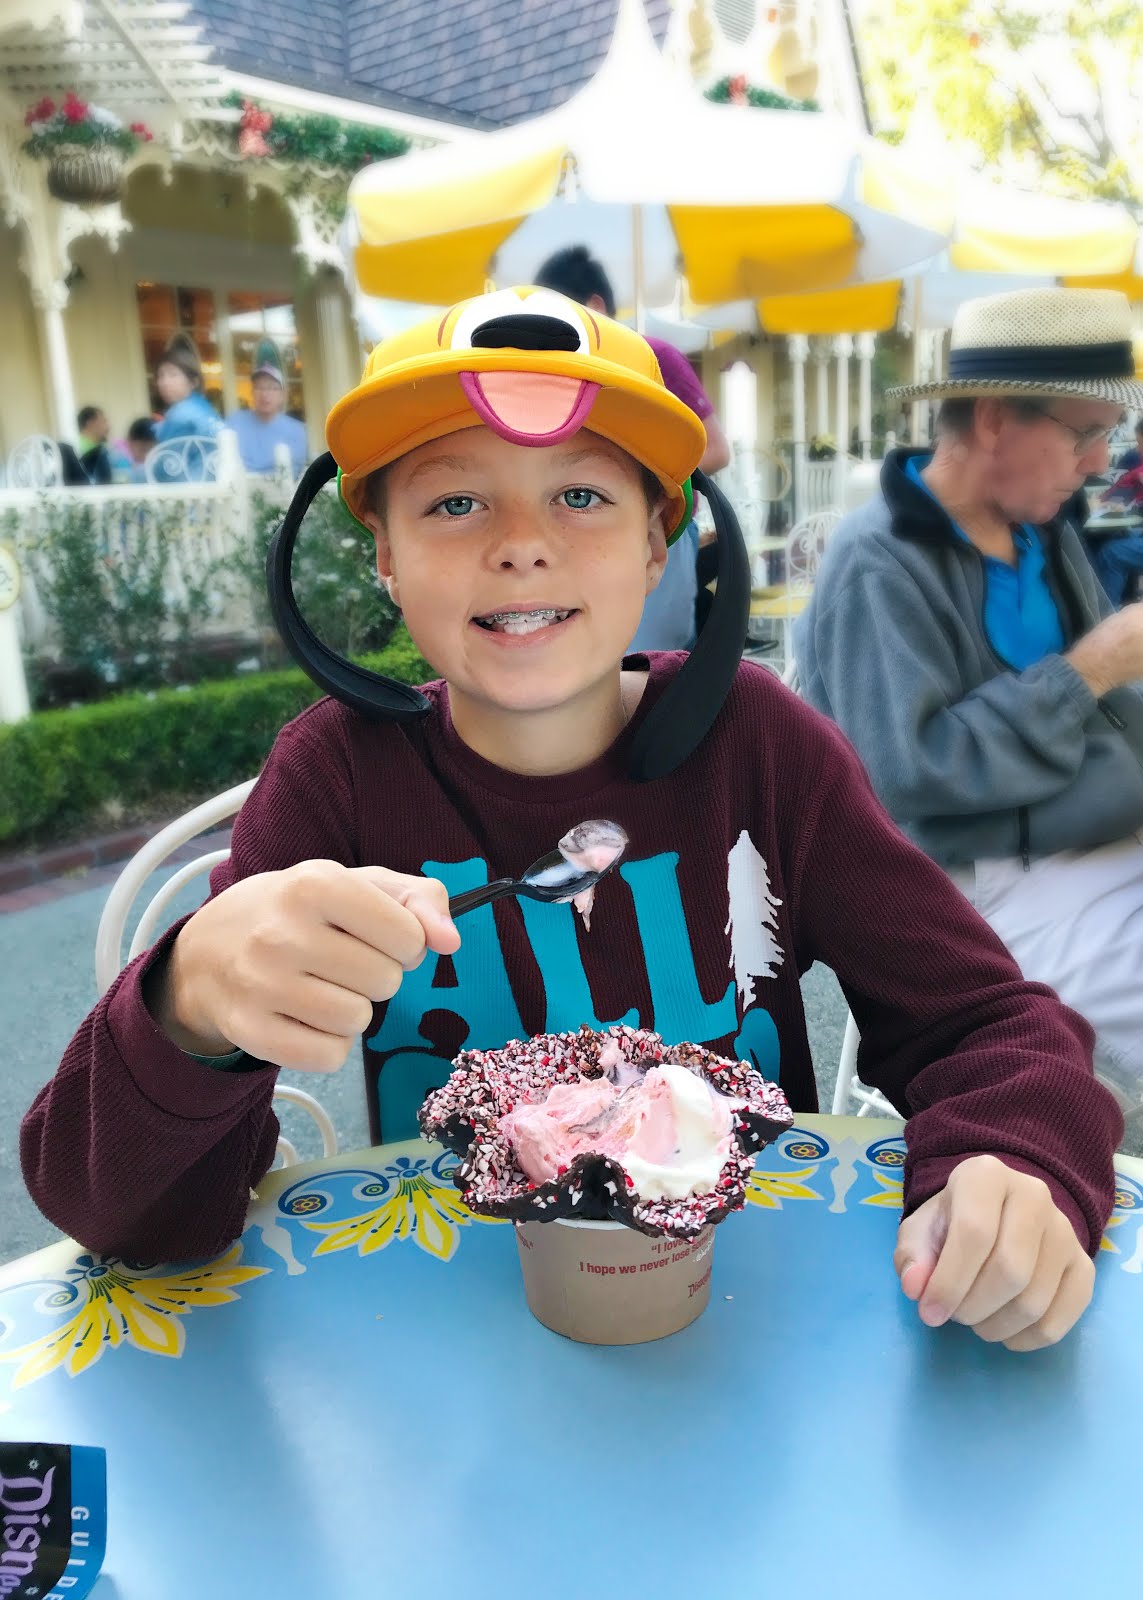 2019 Disneyland Holiday Foodie Guide